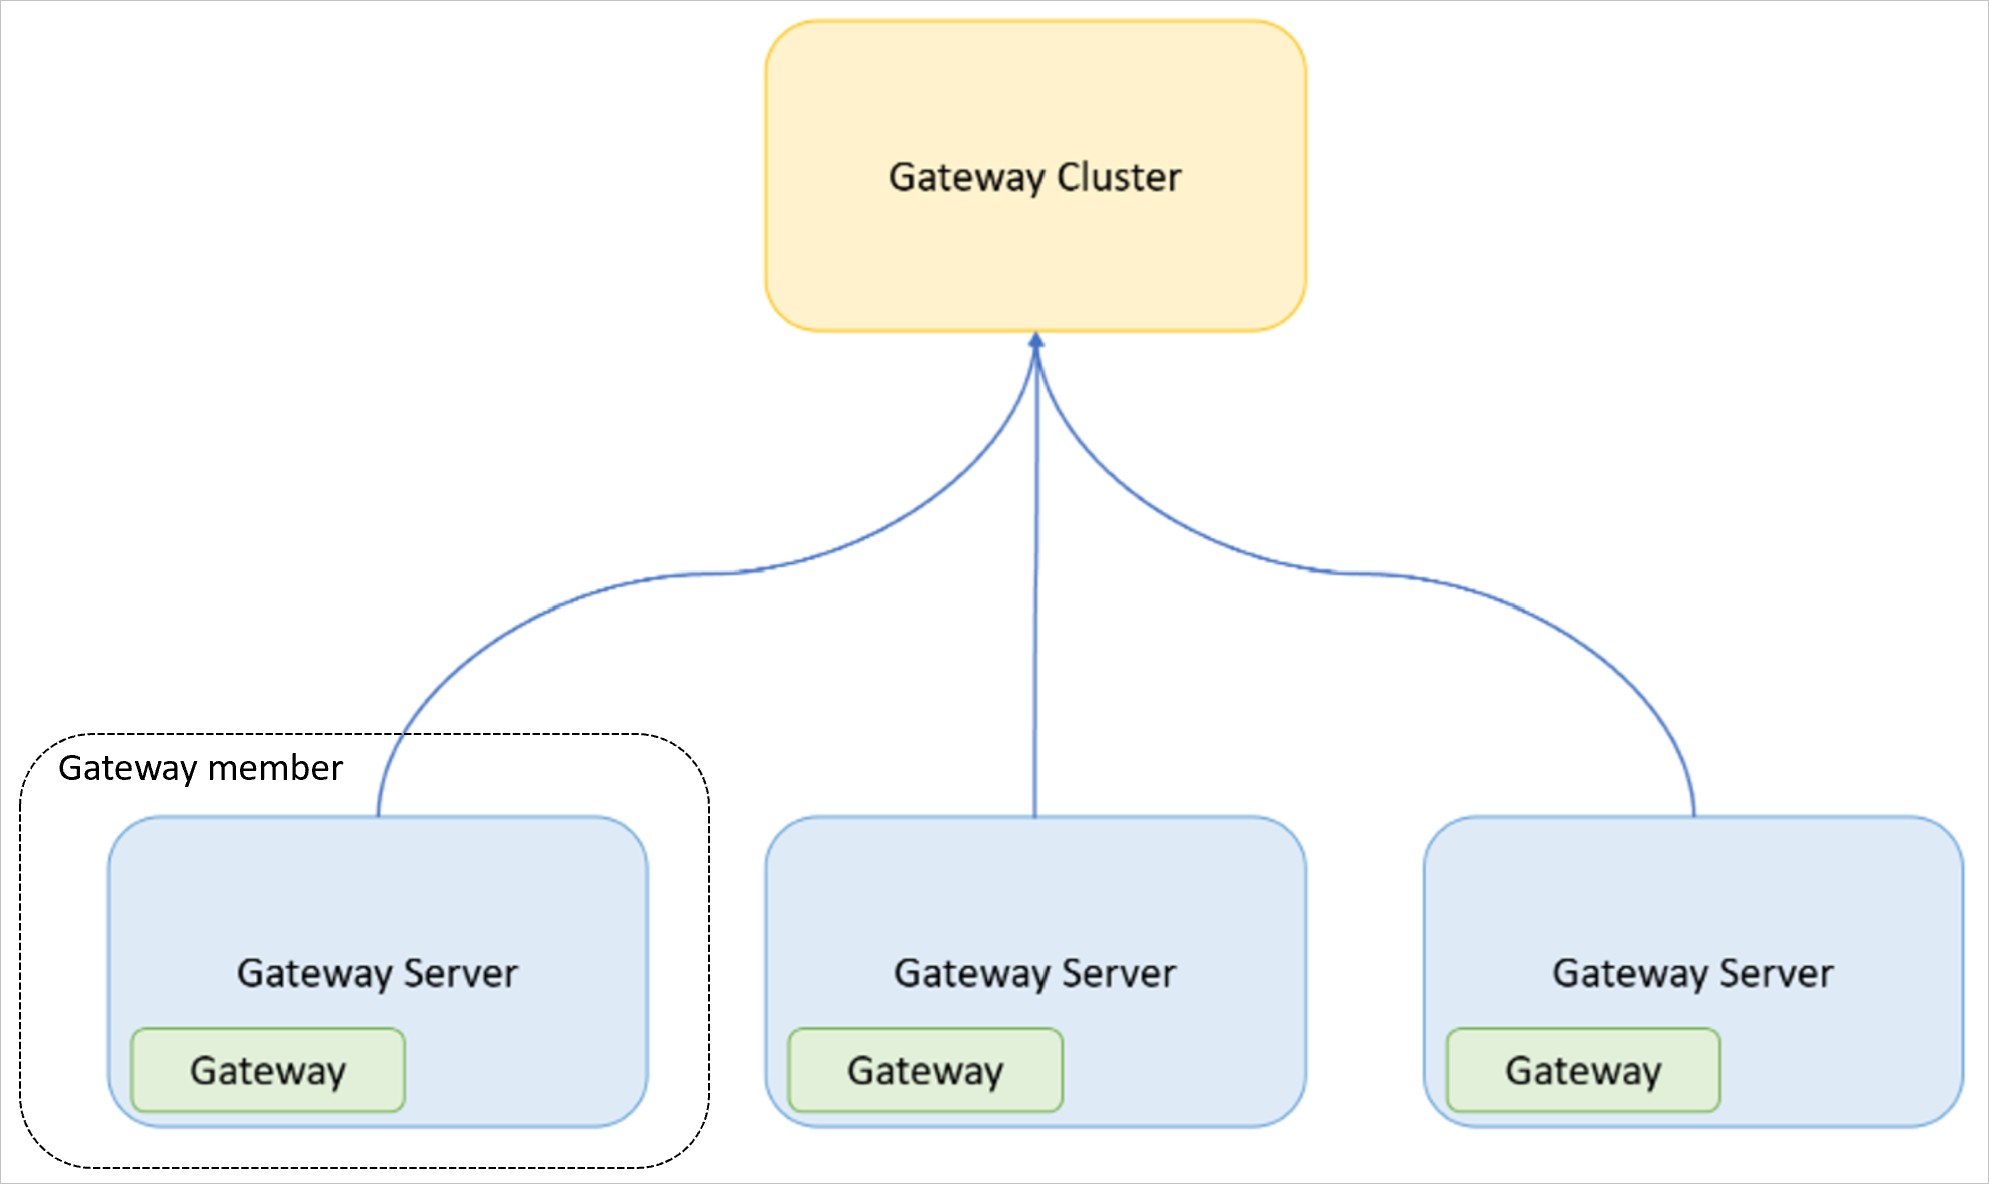 Bild eines Gatewayclusters als Teil von drei Gatewayservern, die jeweils ein separates Gateway enthalten